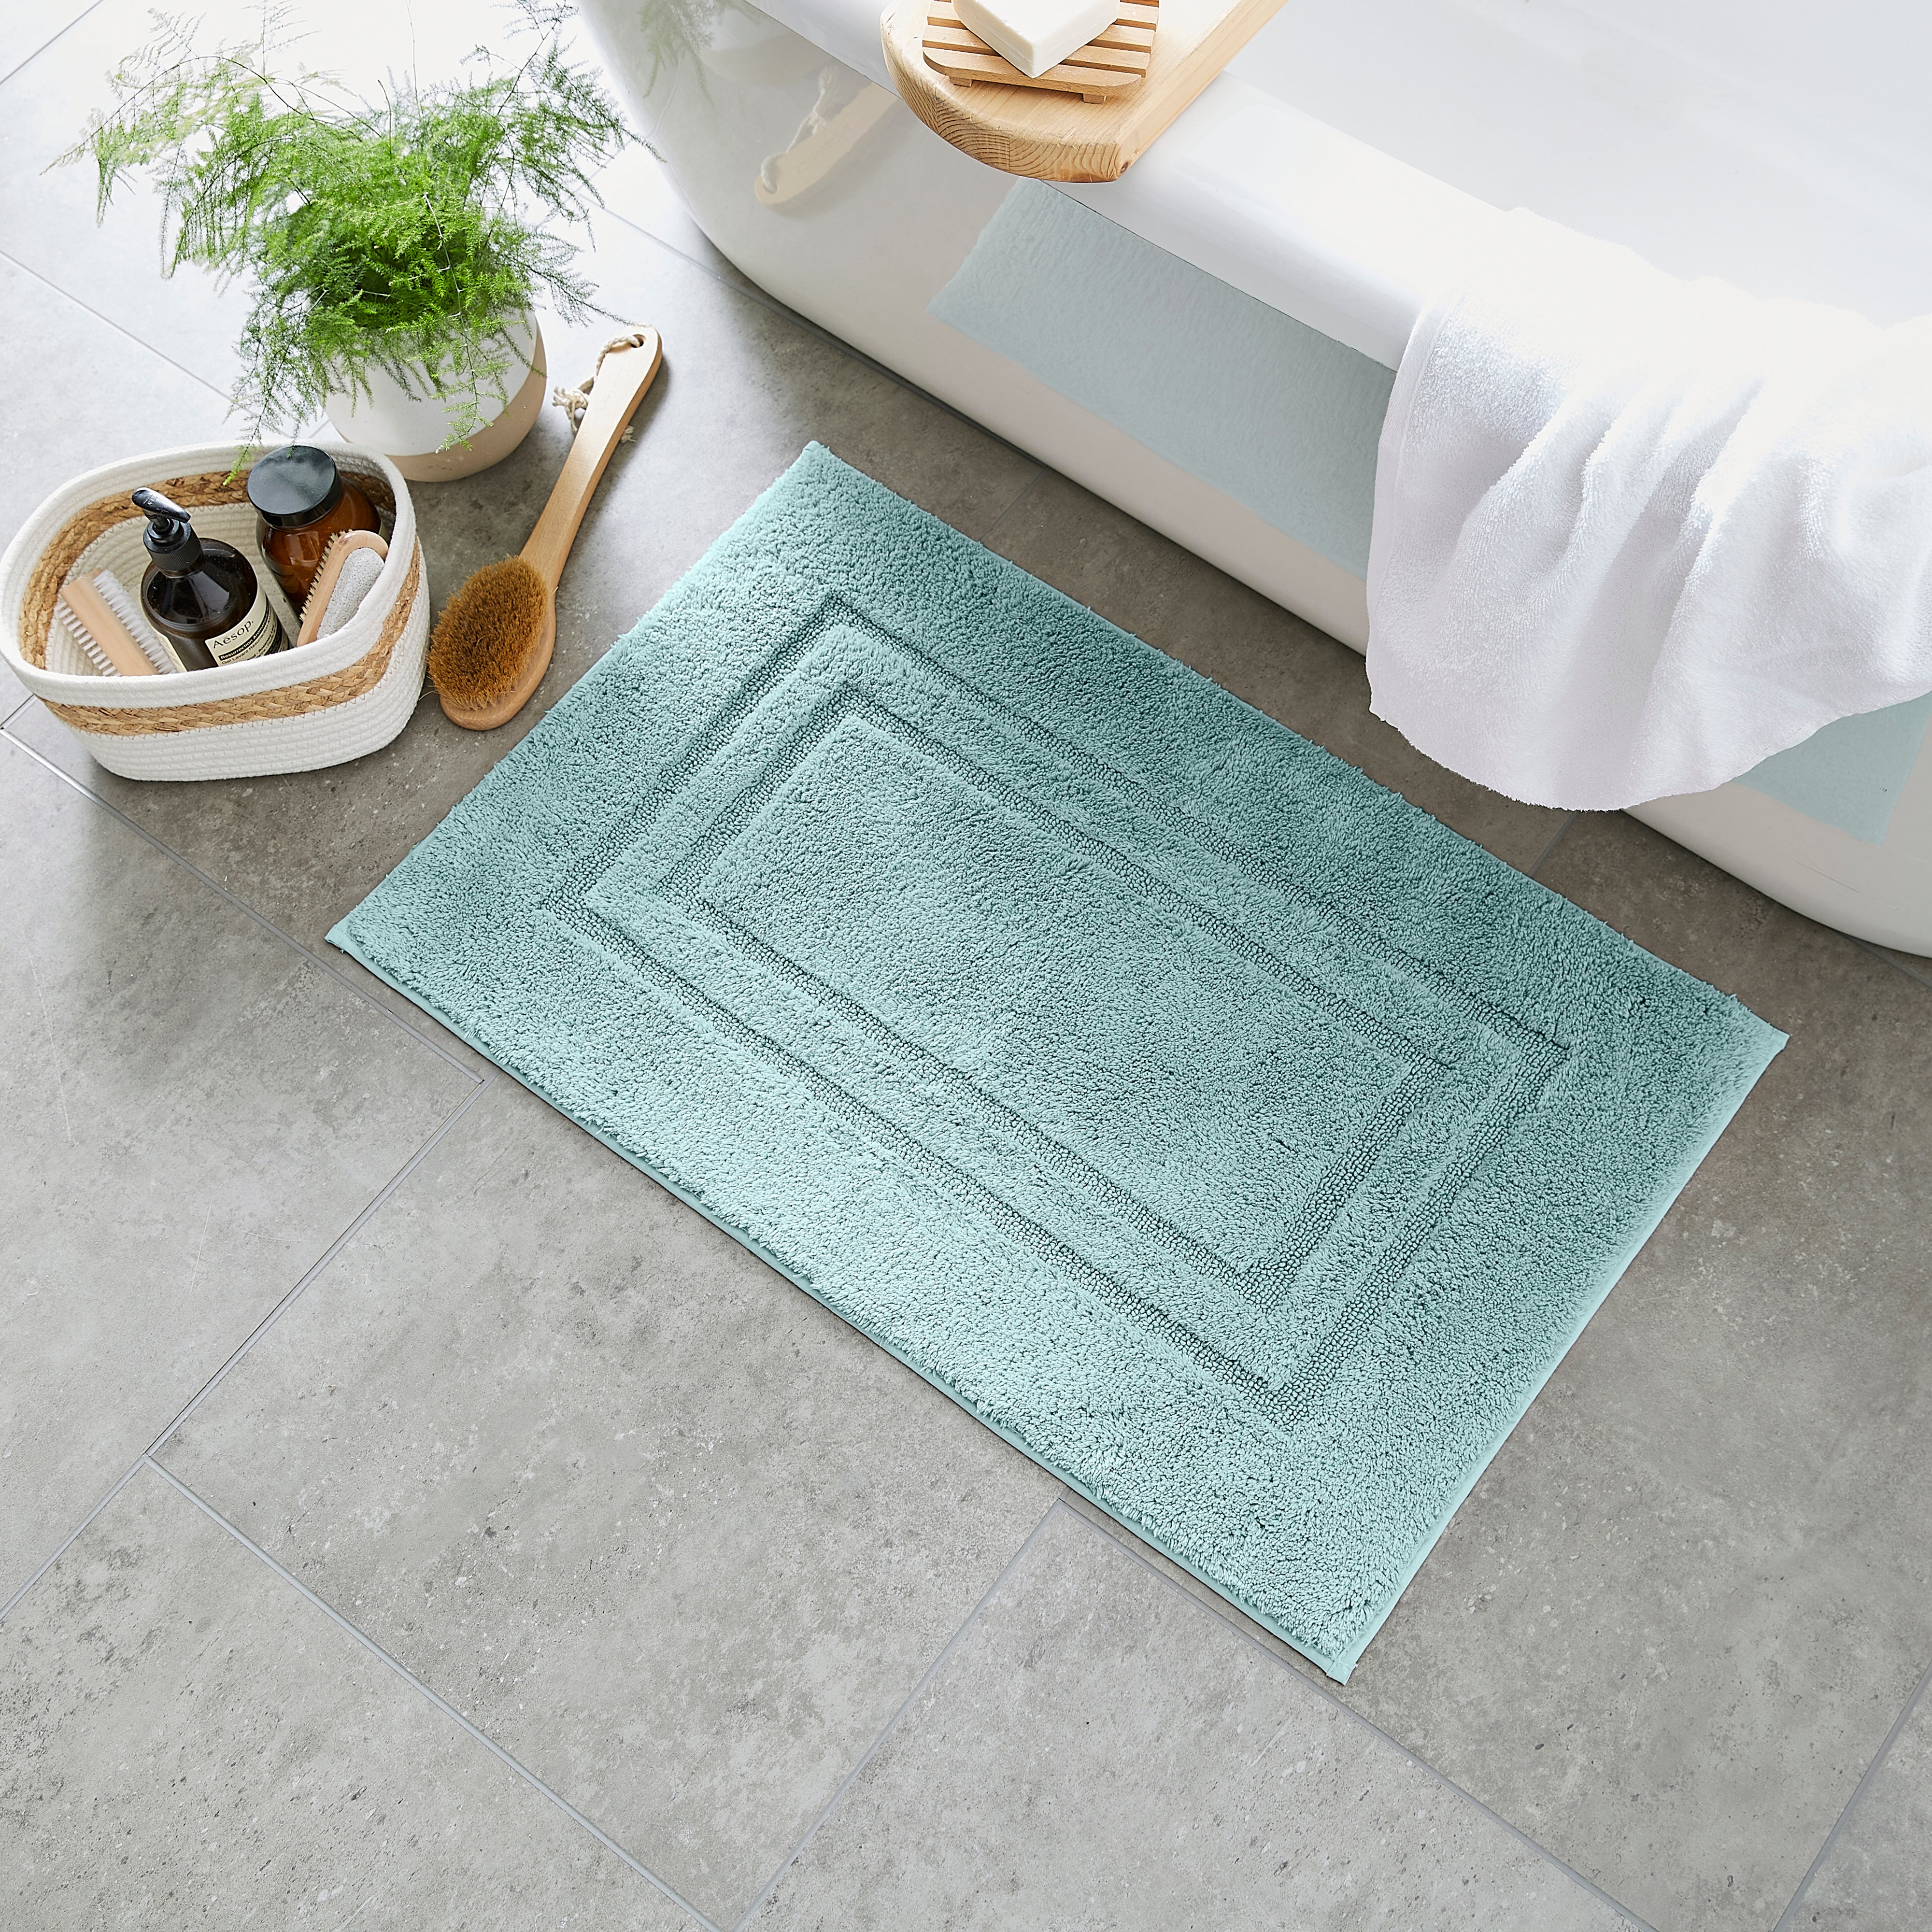 Large size cotton bath mat, choose size and design